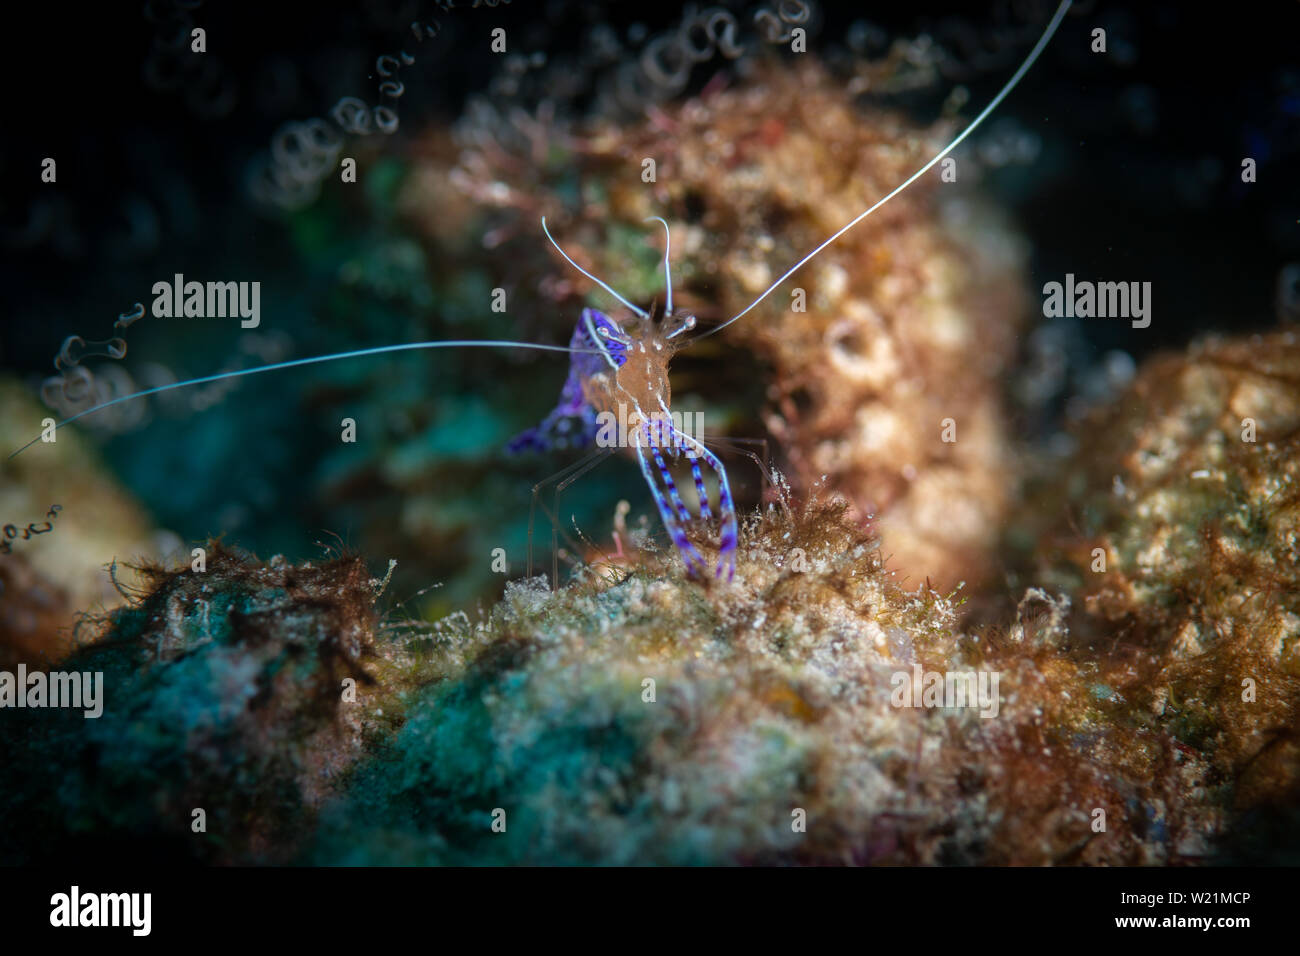 Les couleurs et motifs bleu brillant d'un nettoyant Pedersen la crevette sur le Bari Reef Dive site, Bonaire, Antilles néerlandaises Banque D'Images